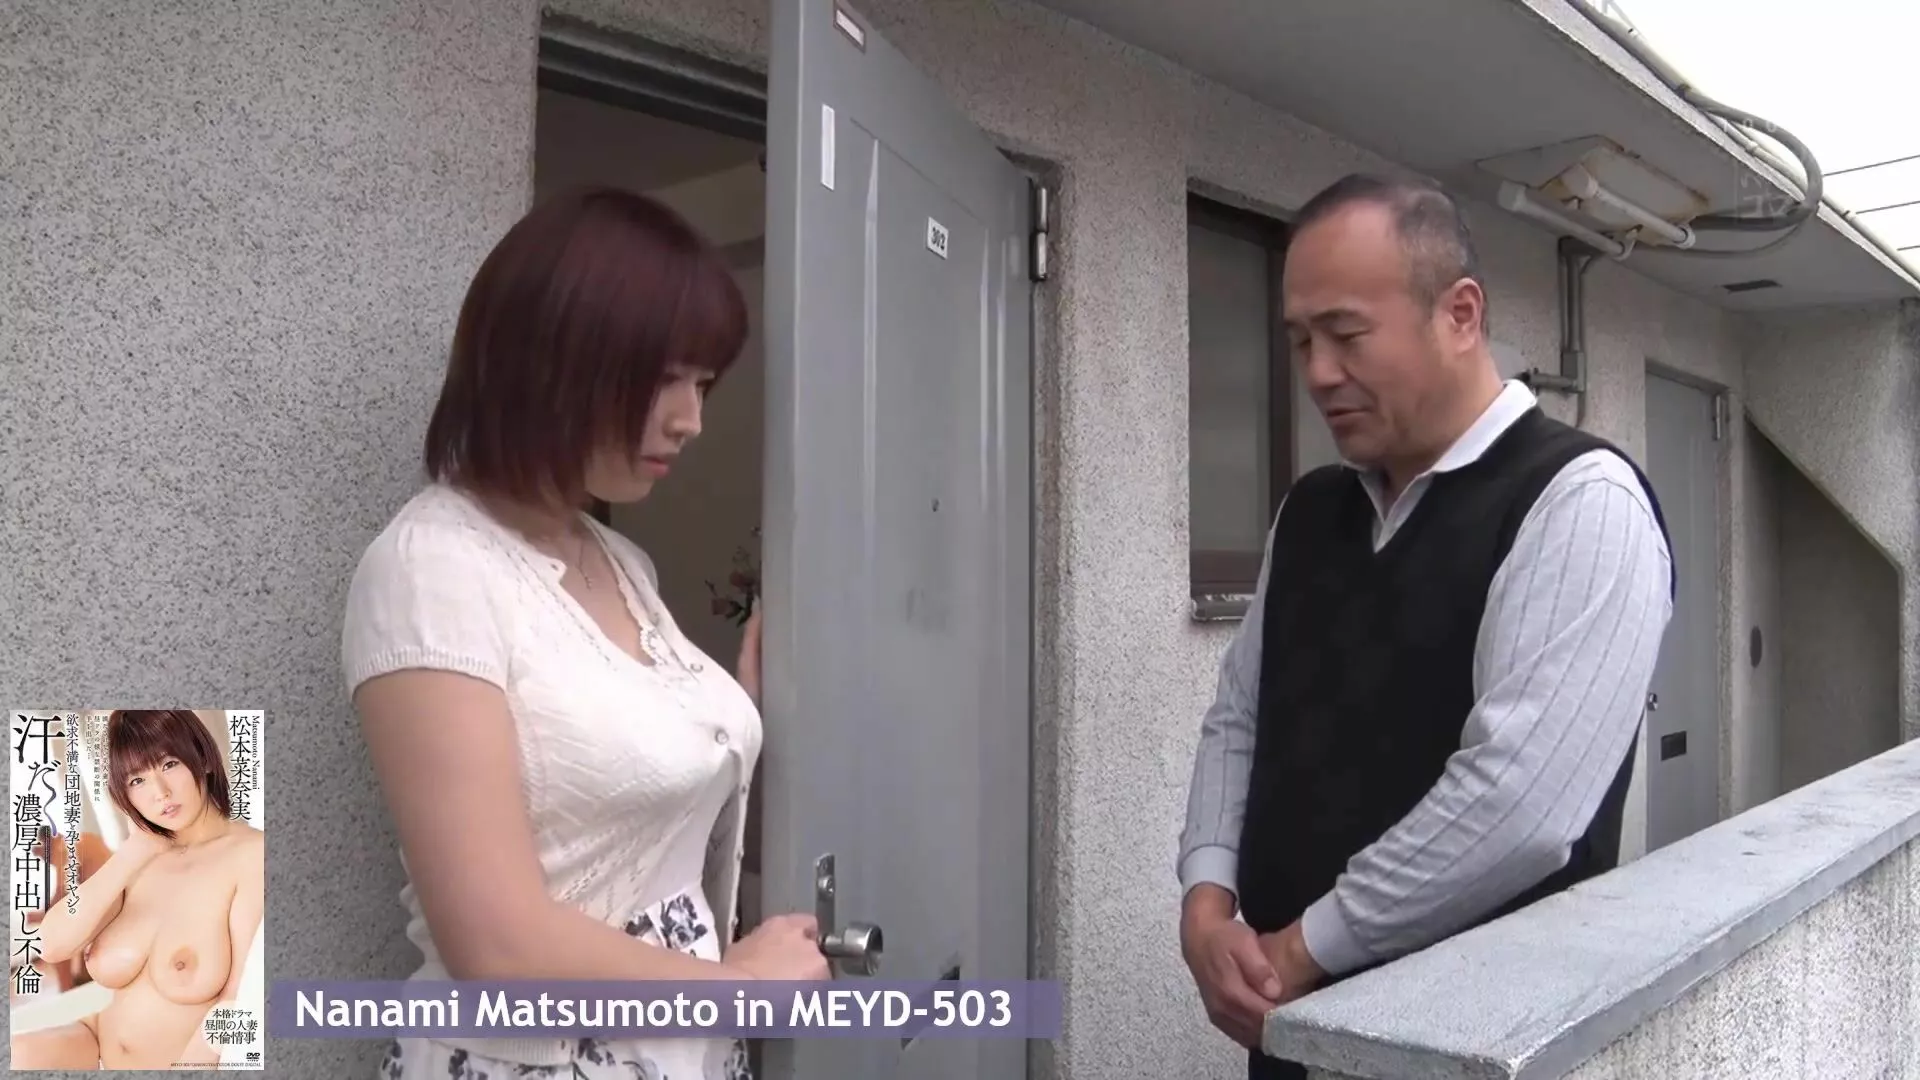 Japanese Neighbour - Japanese: Nanami Matsumoto fucks her older neighbour - Porn GIF Video |  nezyda.com